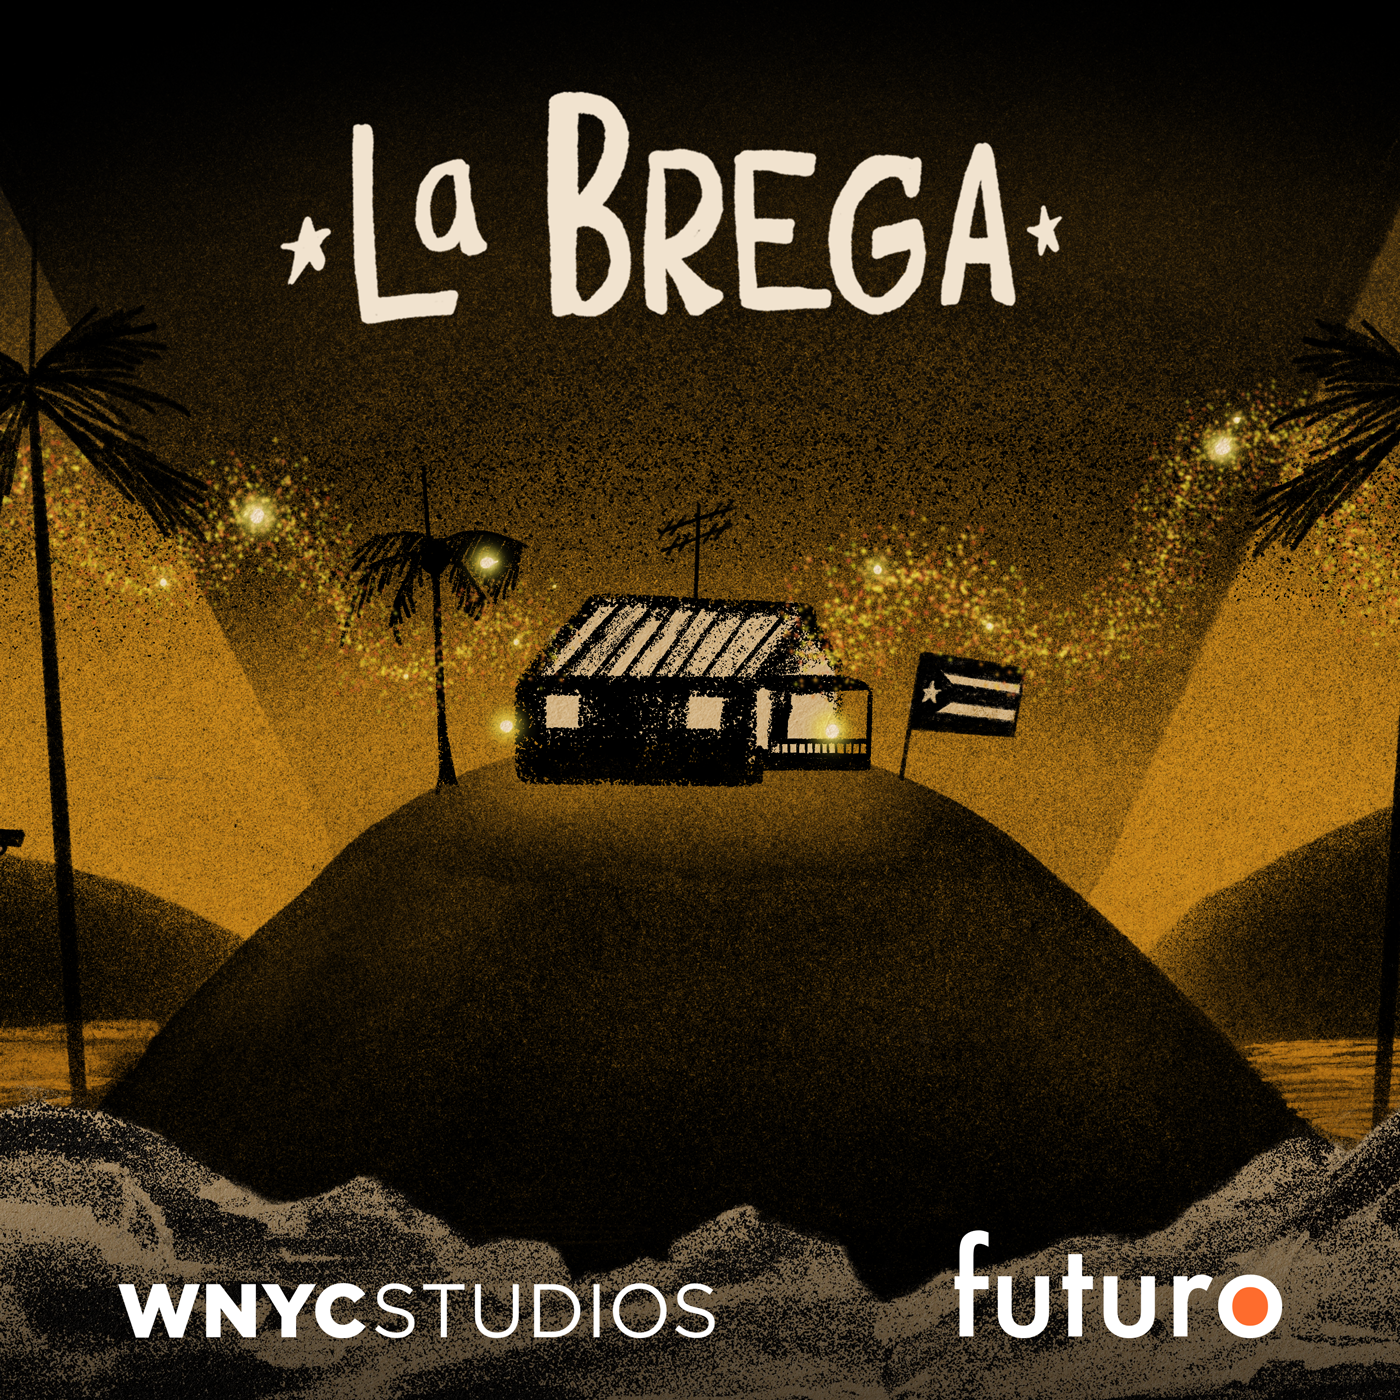 USA v. García Luna Presents: La Brega 2 — The Puerto Rican Experience in 8 Songs